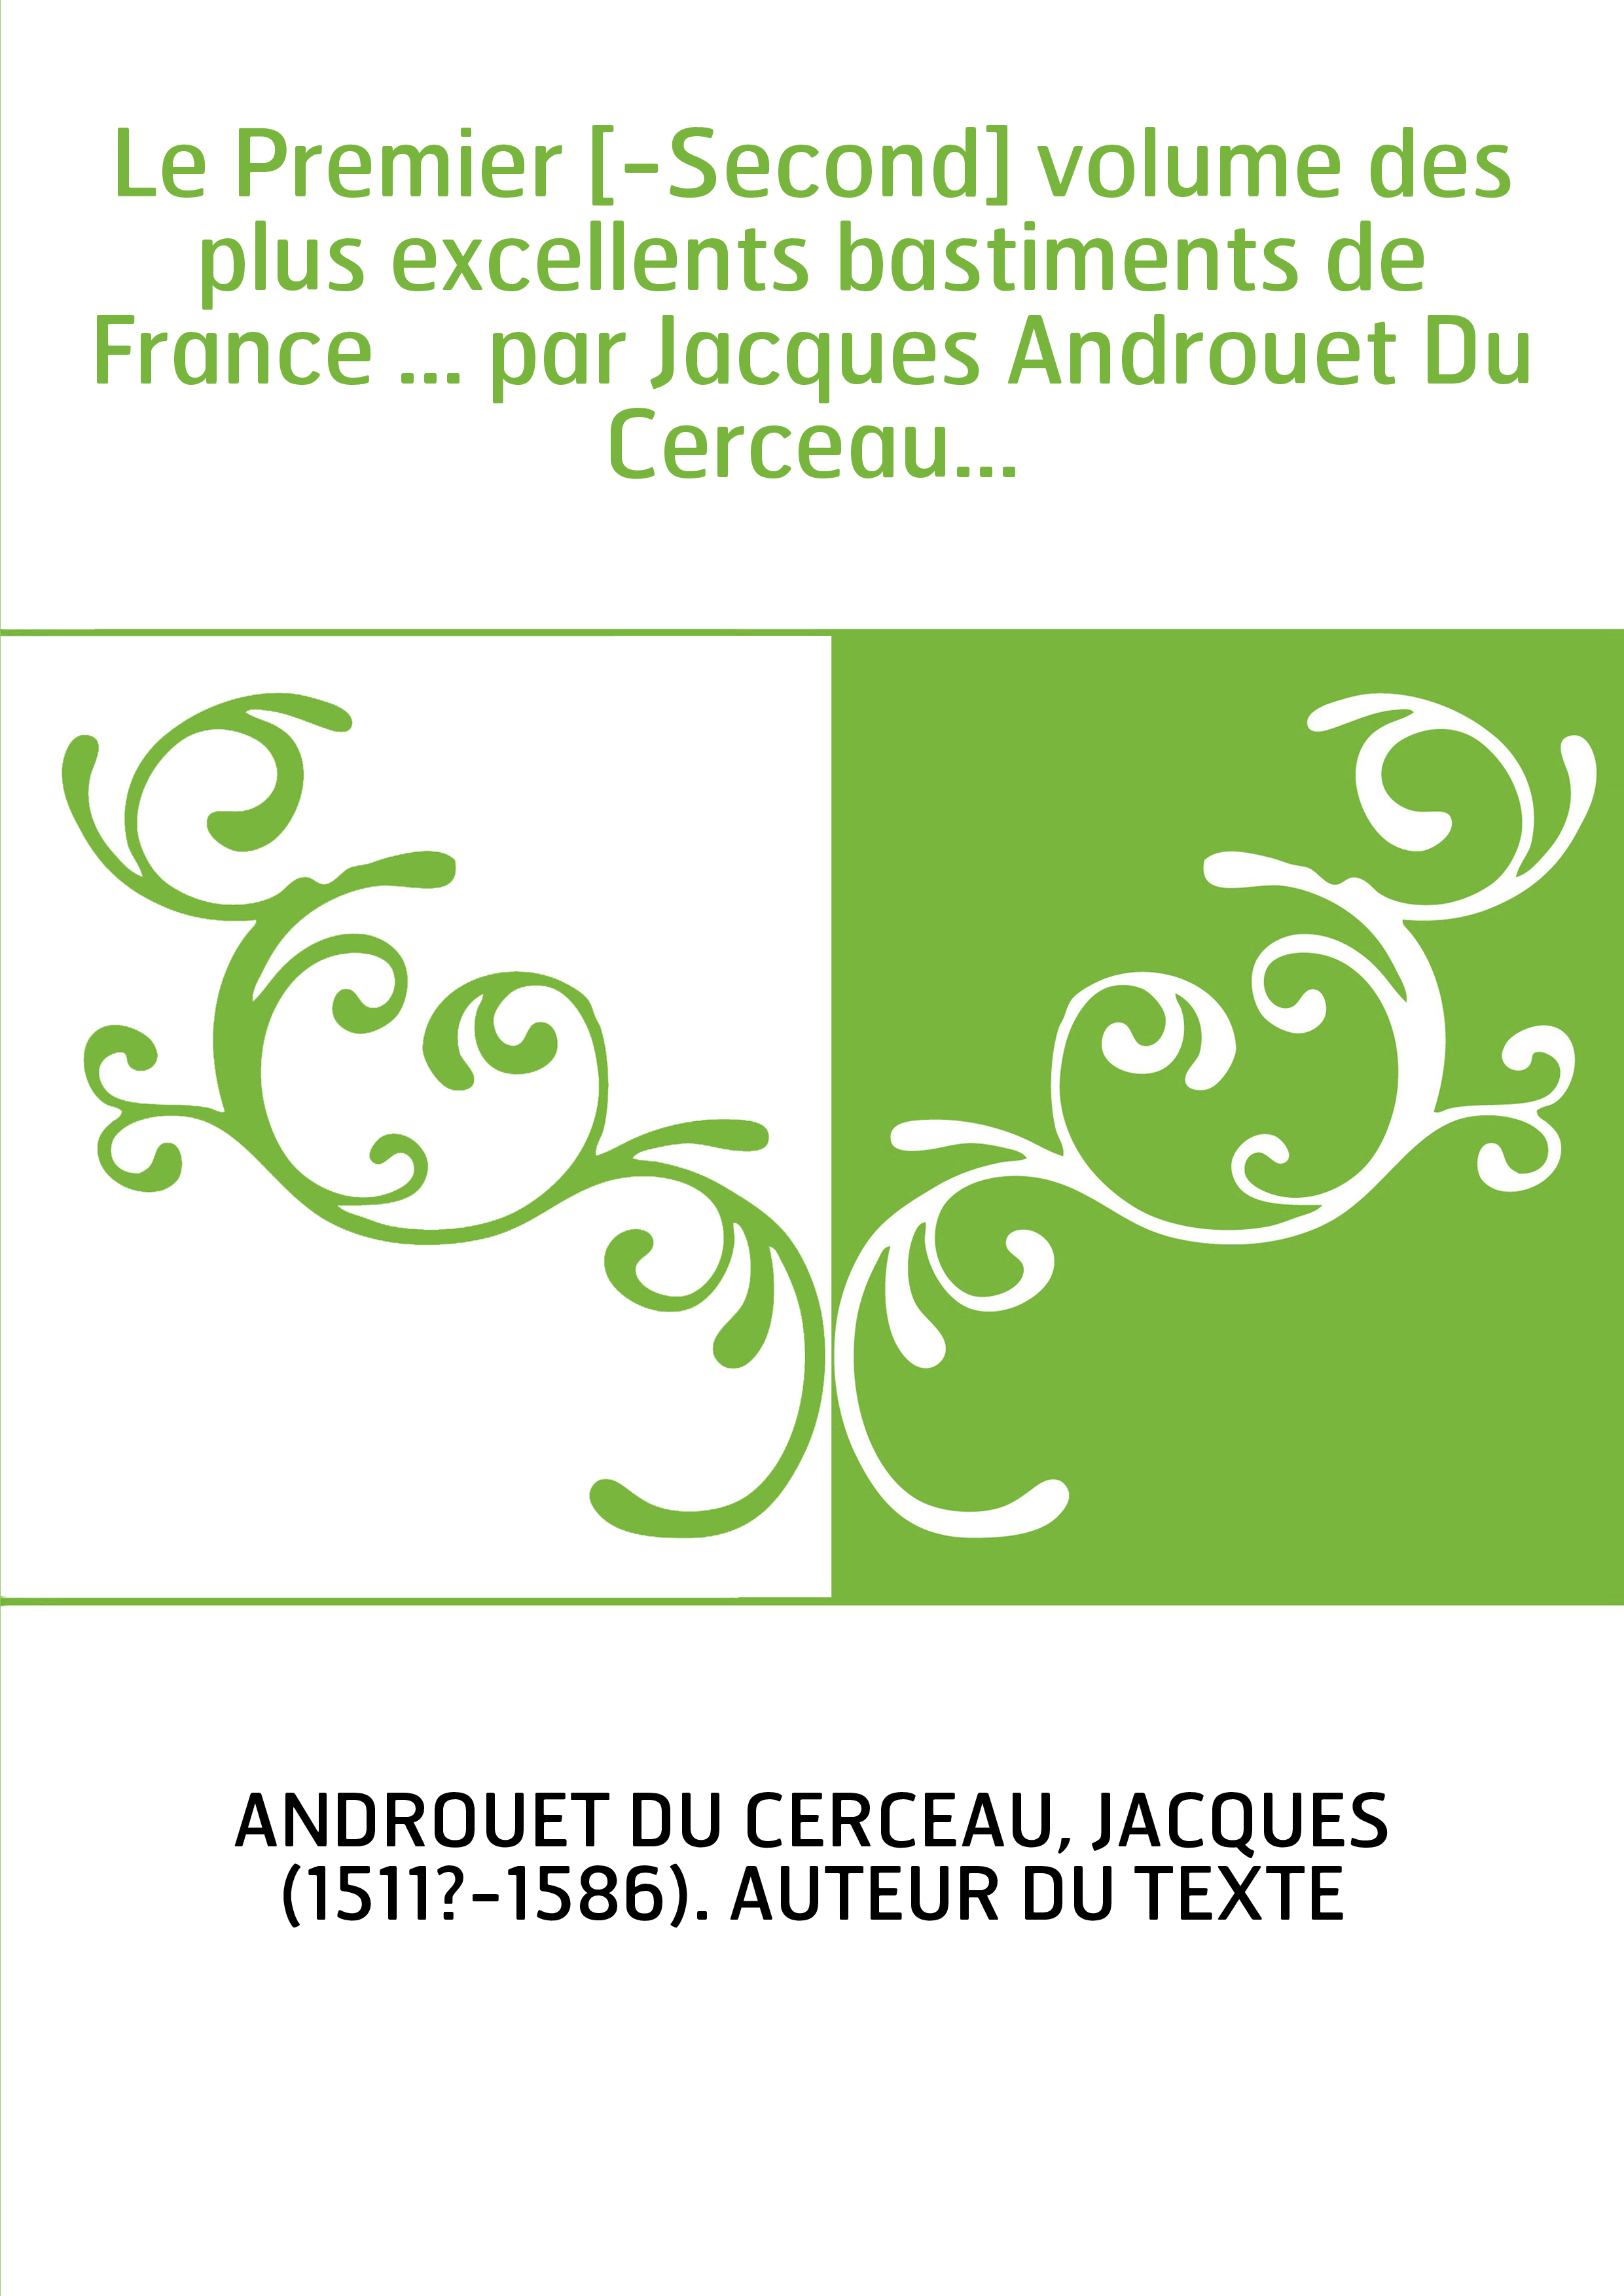 Le Premier [-Second] volume des plus excellents bastiments de France ... par Jacques Androuet Du Cerceau...